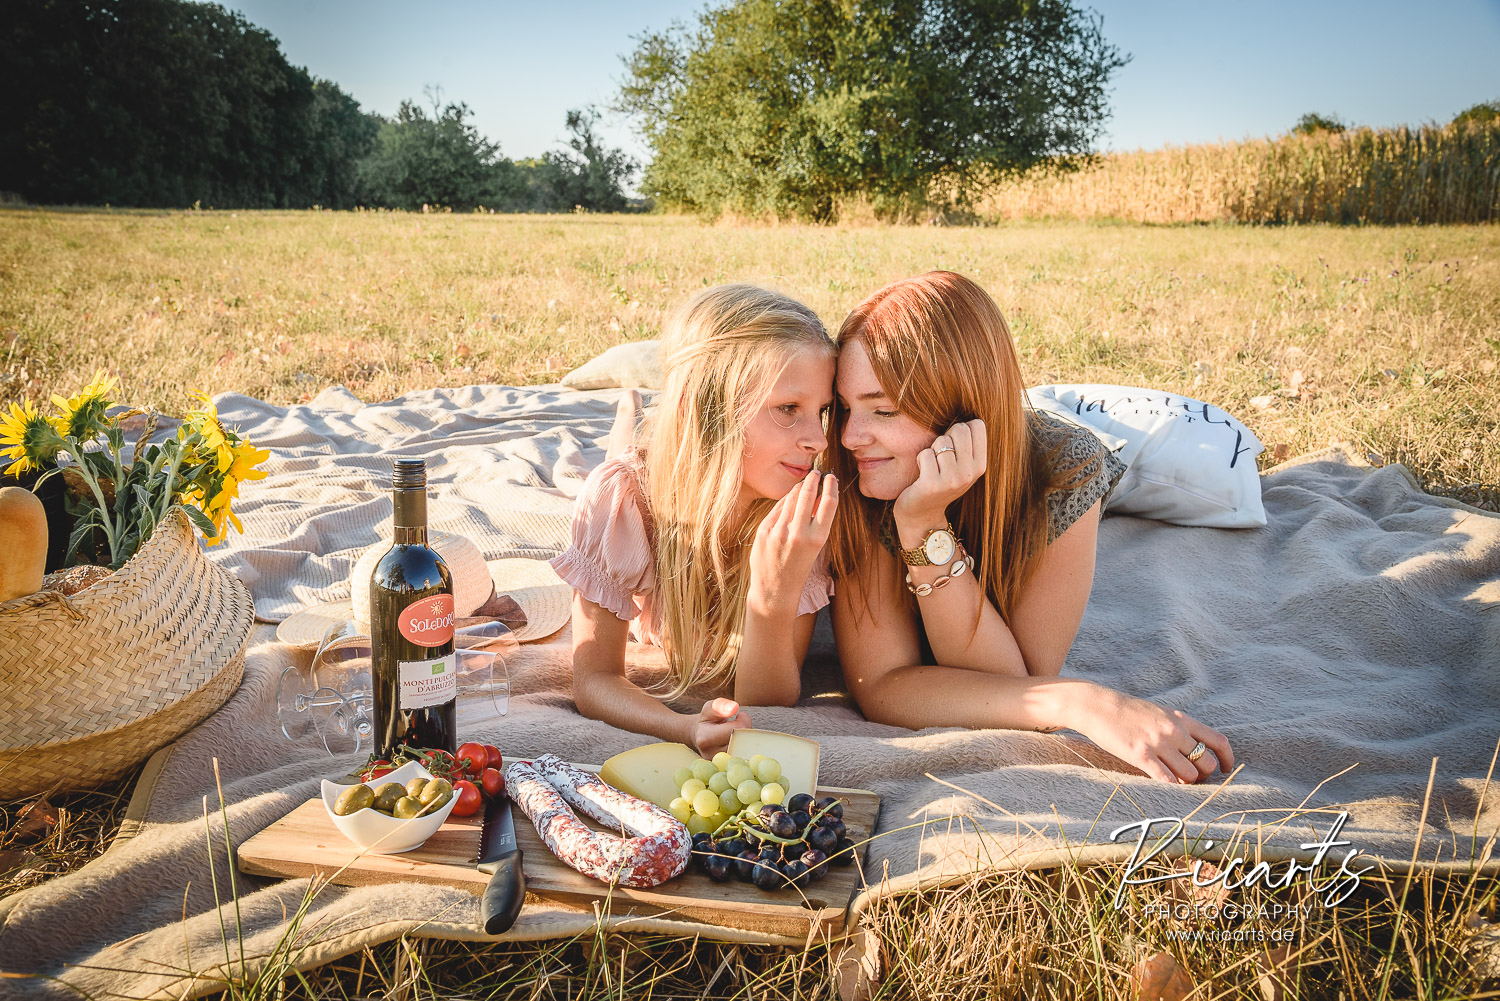 Familienfoto-Picknick-auf-Sommerwiese-zwei-Schwestern-liegen-auf-Picknickdecke